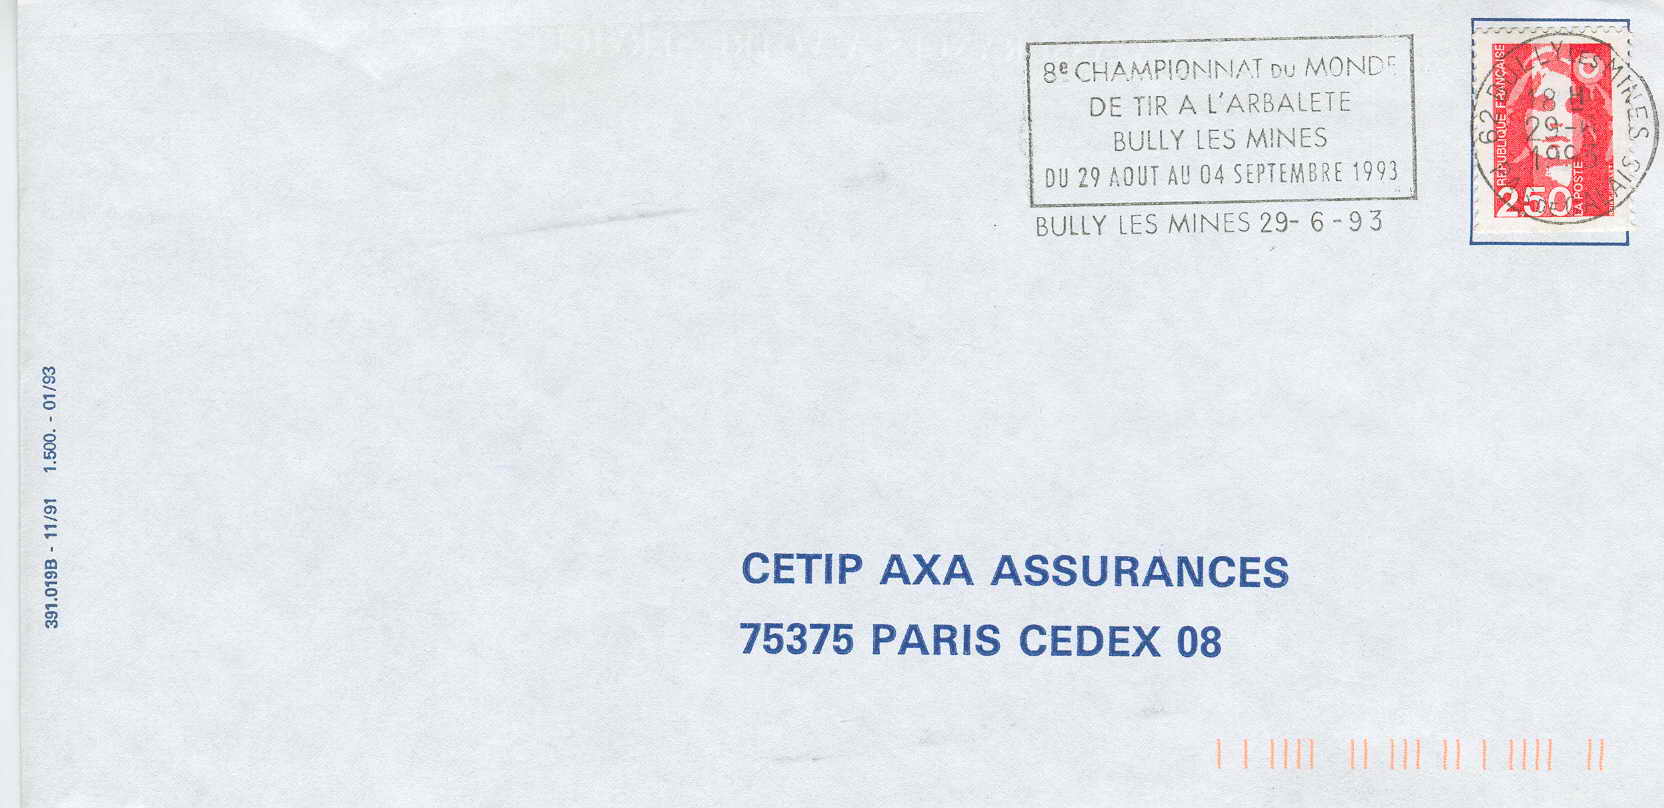 TIR A ARBALETE  1993 OBLITERATION TEMPORAIRE BULLY LES MINES CHAMPIONNATS DE FRANCE - Archery